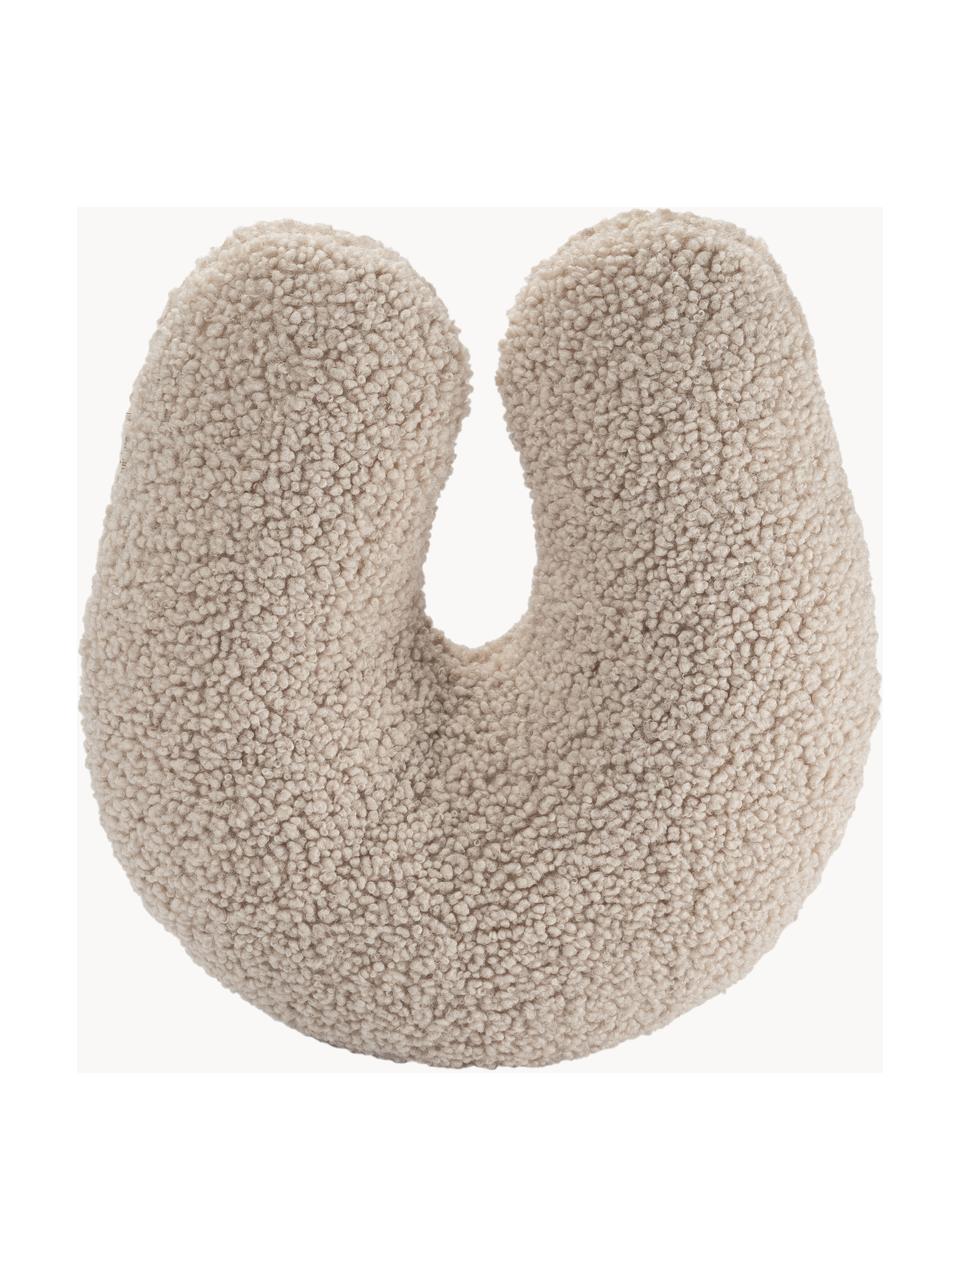 U-Kissen Arch aus Teddy, Bezug: Teddy (100 % Polyester), Hellbeige, B 38 x L 42 cm